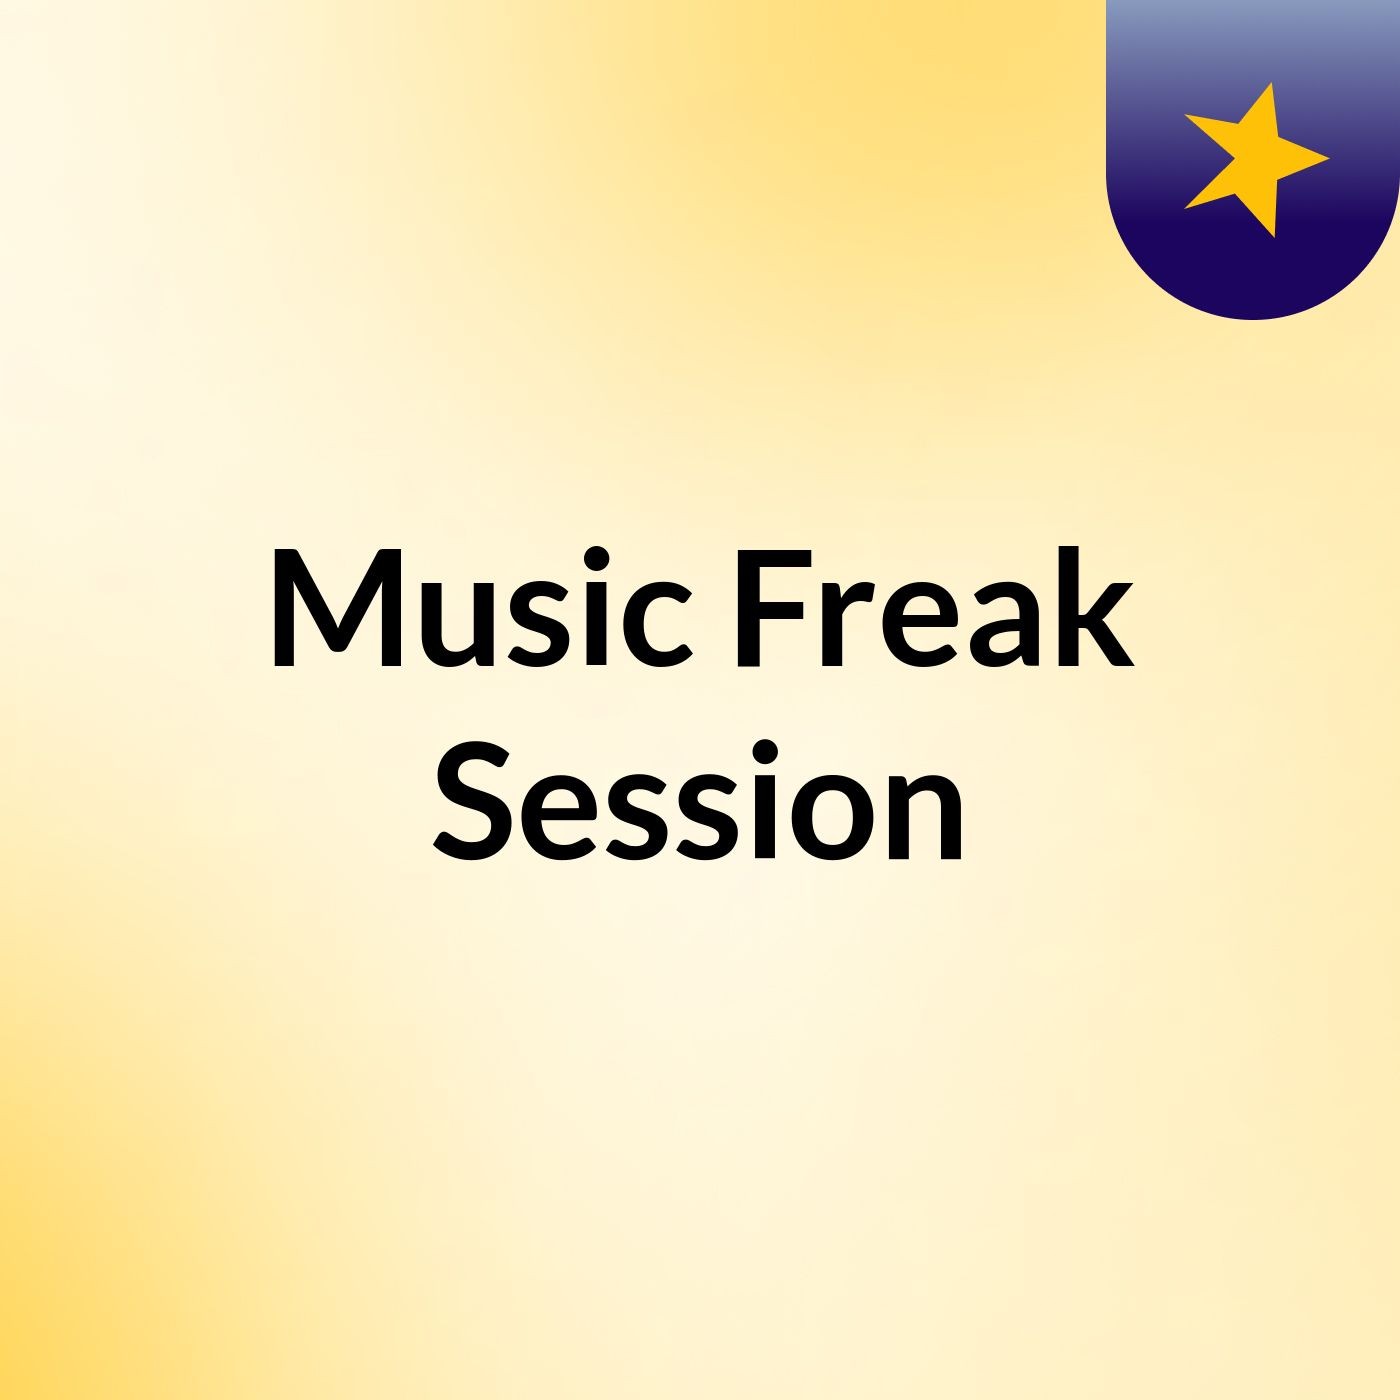 Music Freak Session